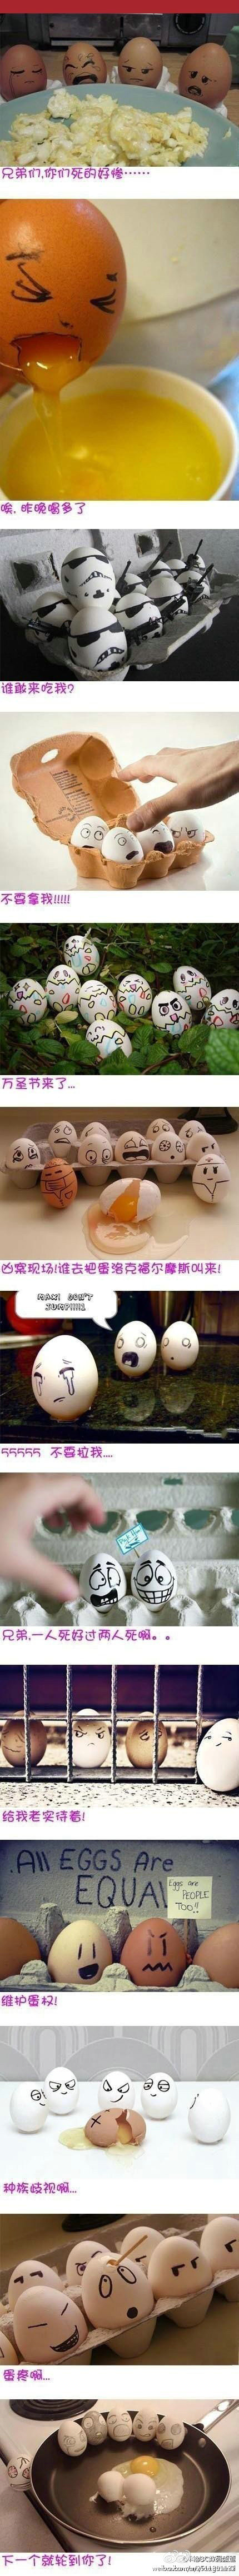 开心一笑:创意手绘图片鸡蛋的悲催生活